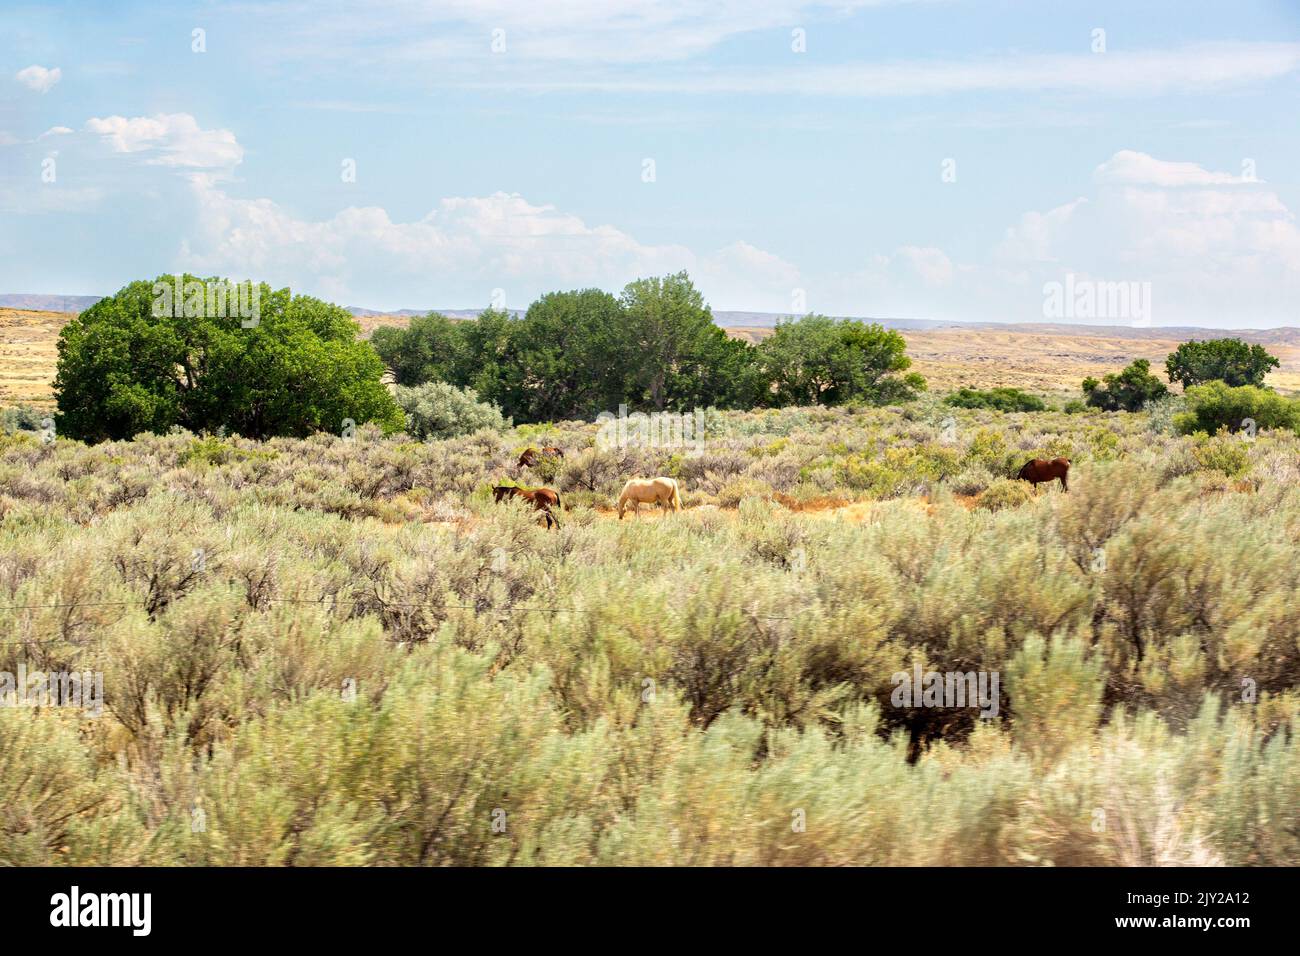 Chevaux paître dans un paysage aride de de steppe à sauge et arbres au nord de Cody, Wyoming Banque D'Images